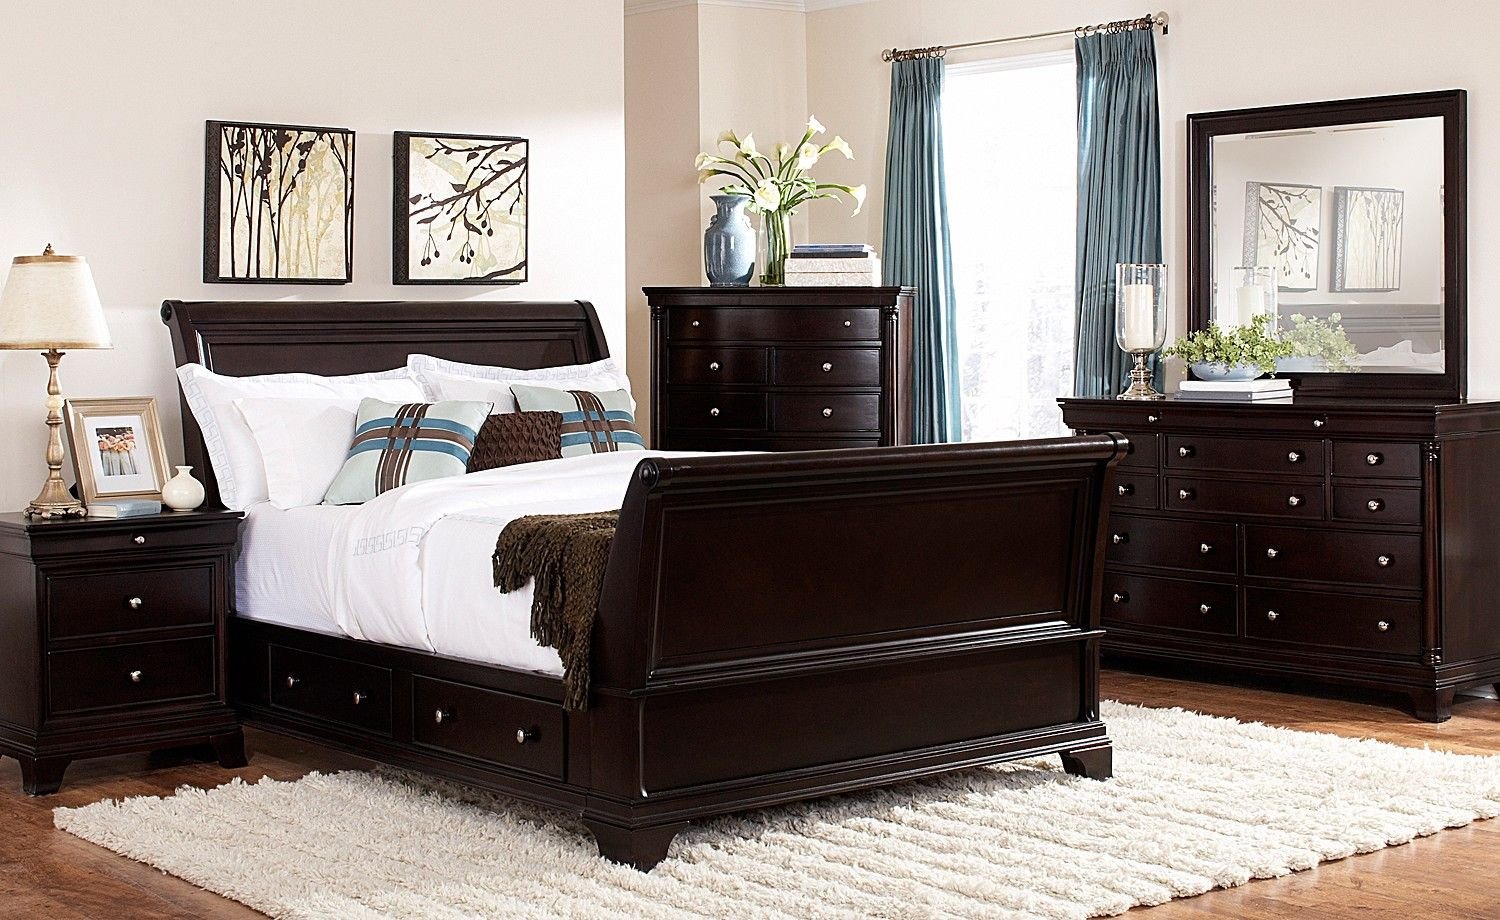 Nice Cheap Bedroom Set Inspirational Lakeshore Bedroom 7 Pc Queen Storage Bedroom Furniture